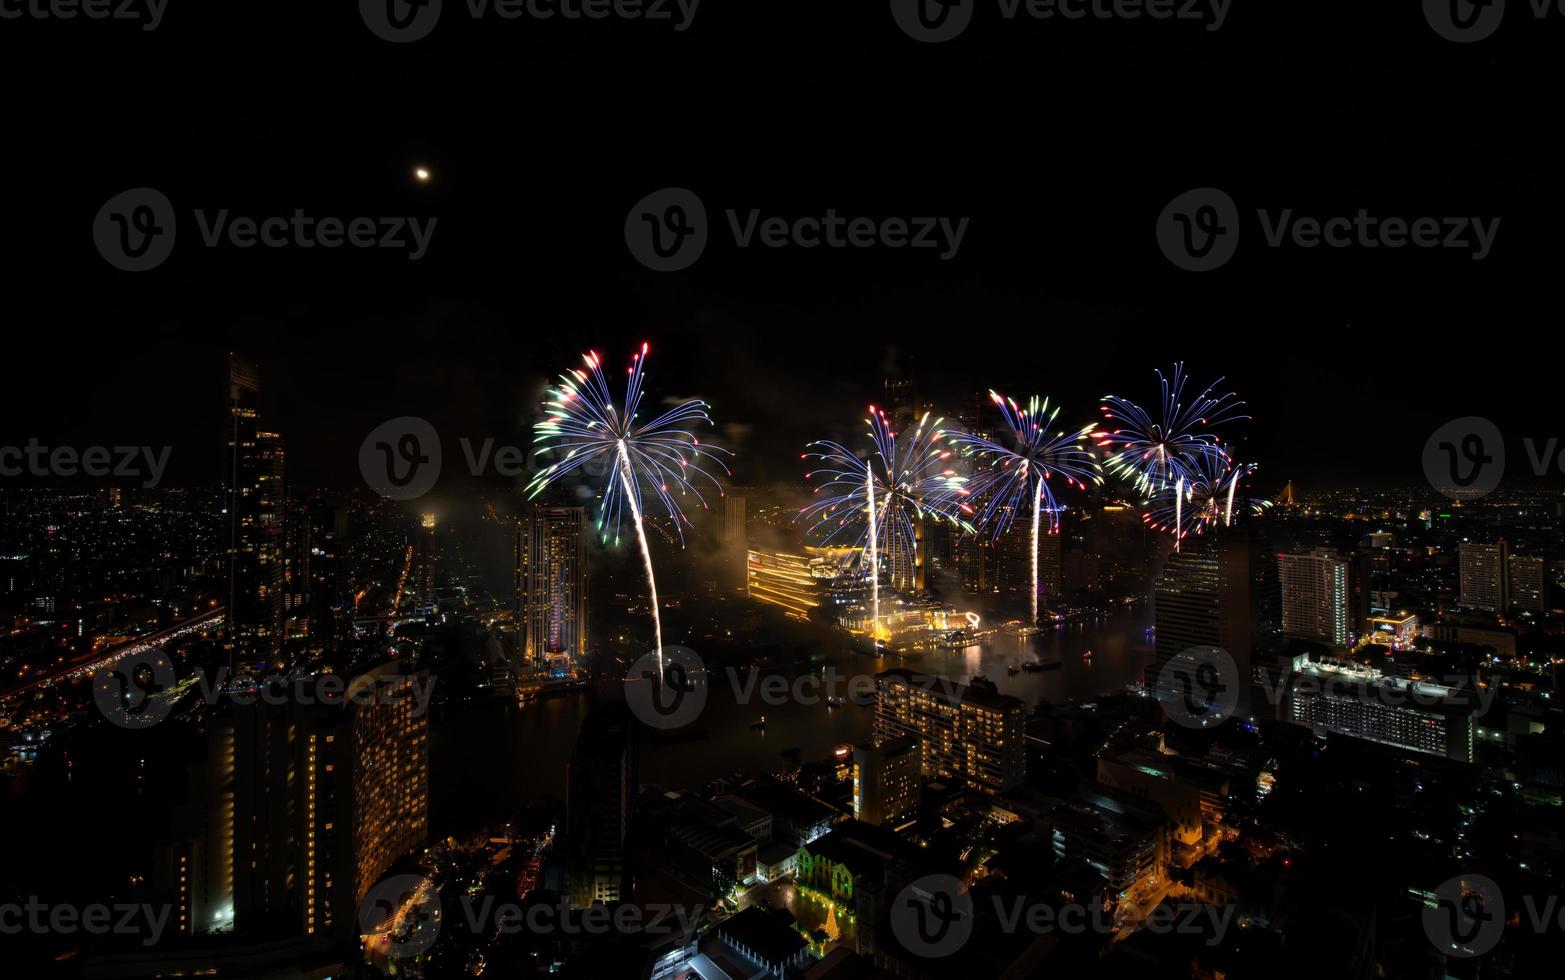 spectaculair vuurwerk Scherm langs de chao phraya rivier- Bangkok, Thailand foto